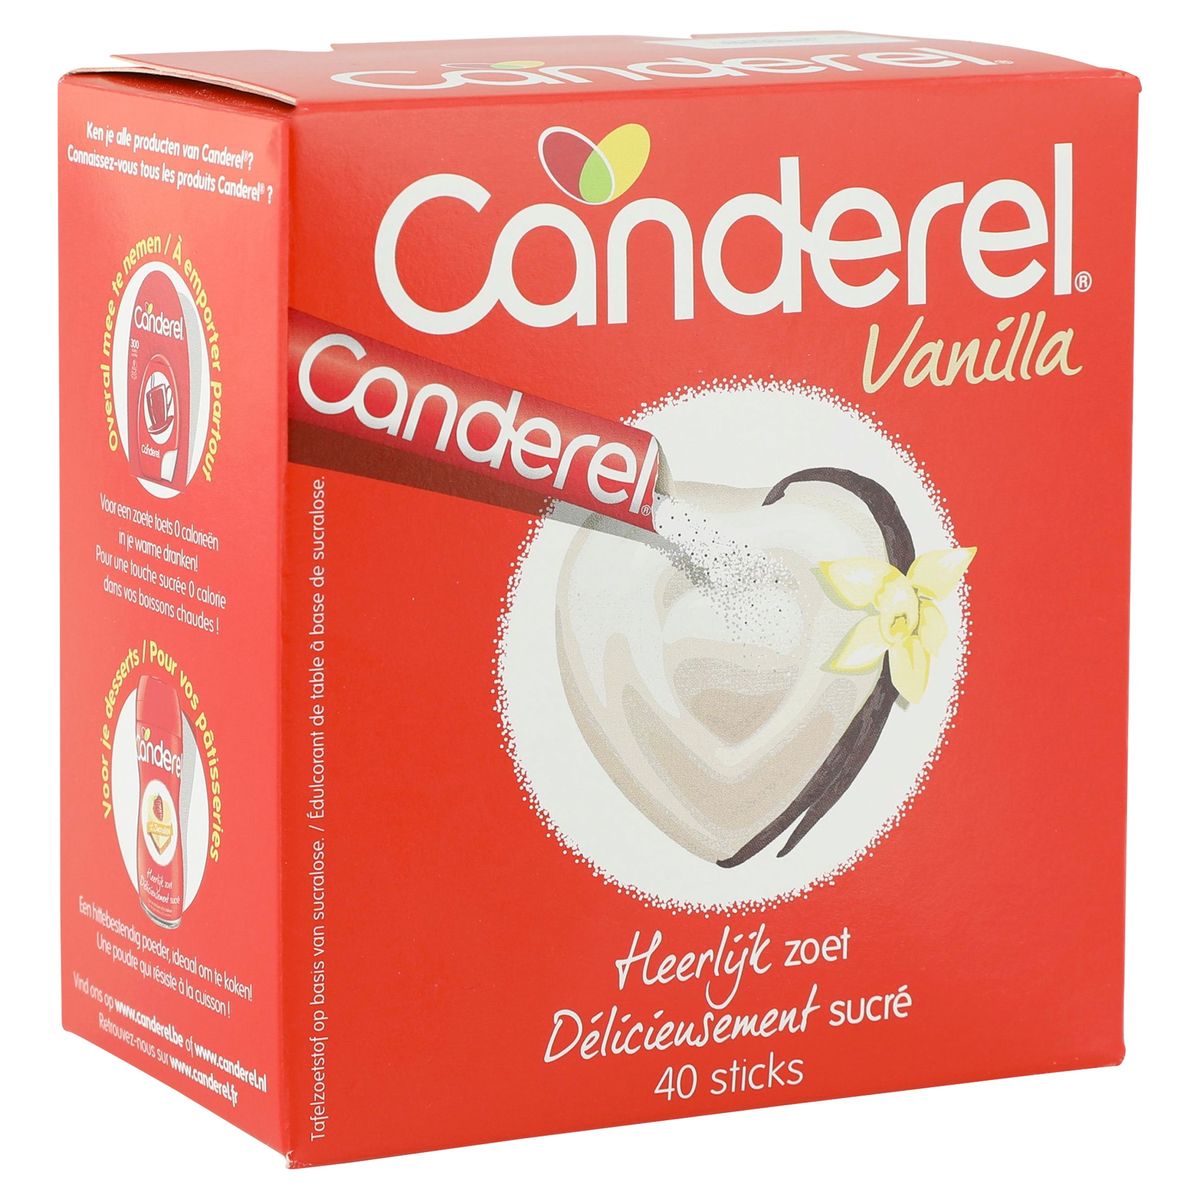 Canderel Canderel (75 g) - acheter sur Galaxus